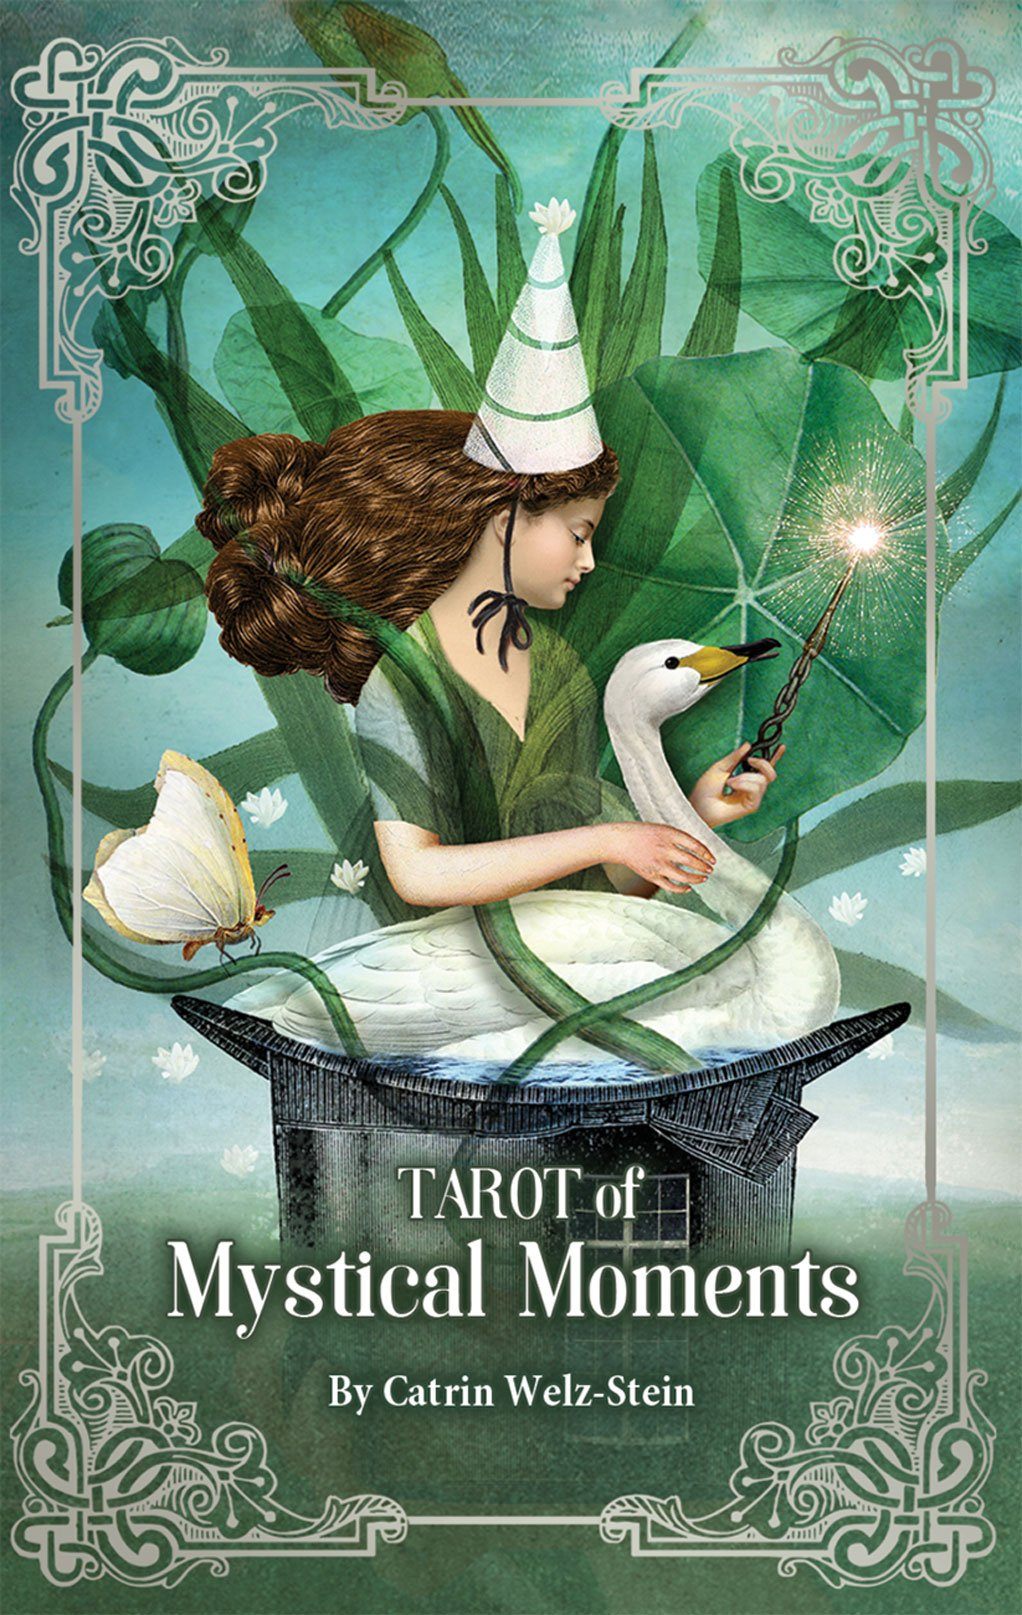 Tarot of Mystical Moments Tarot Kit